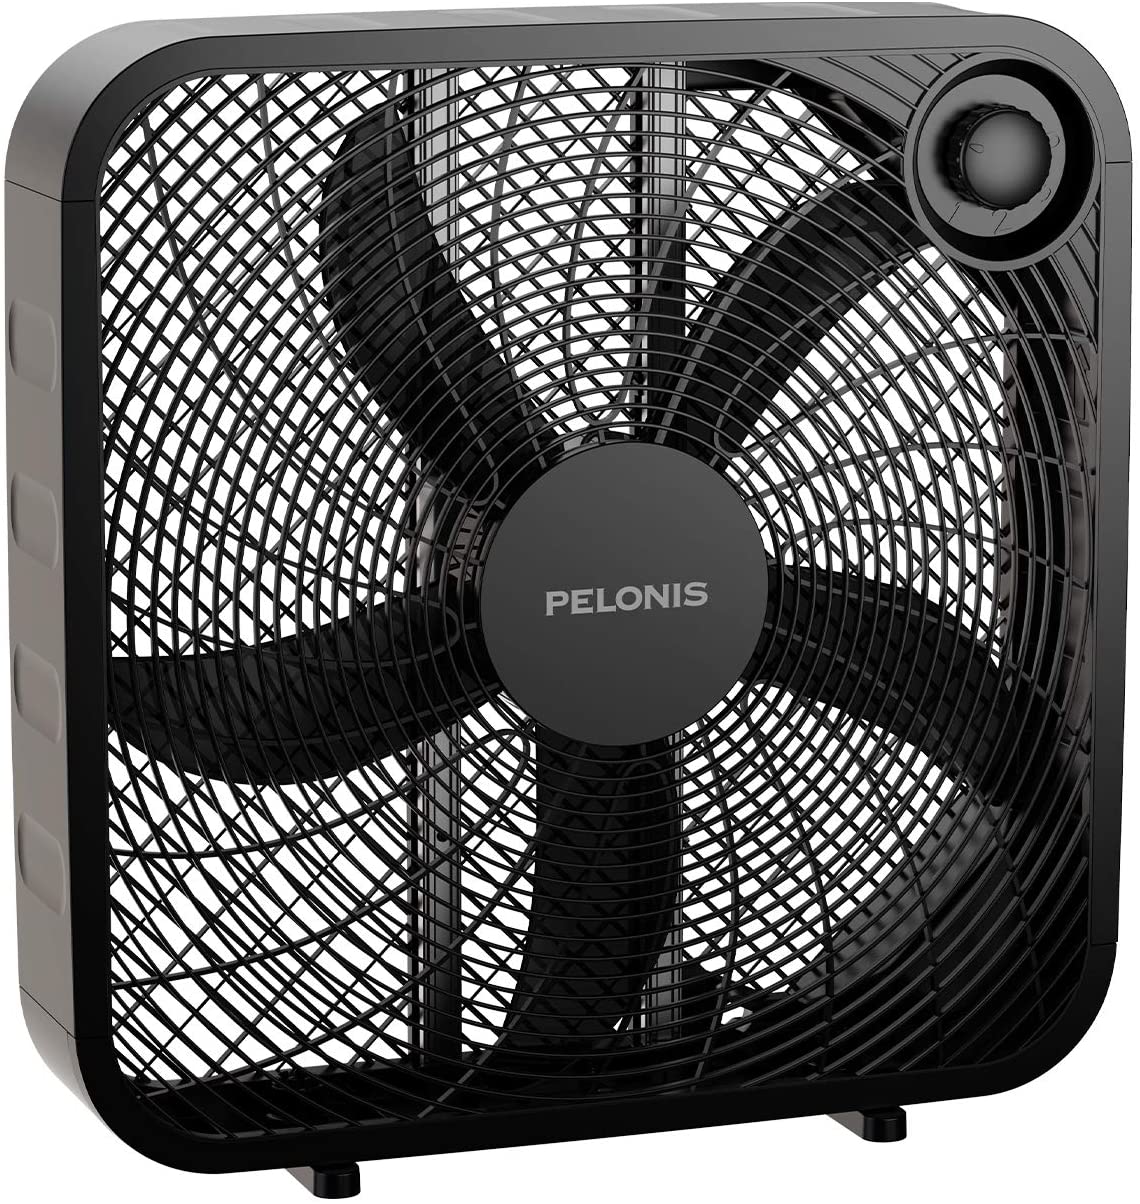 PELONIS Home Lightweight Box Fan, 20-Inch